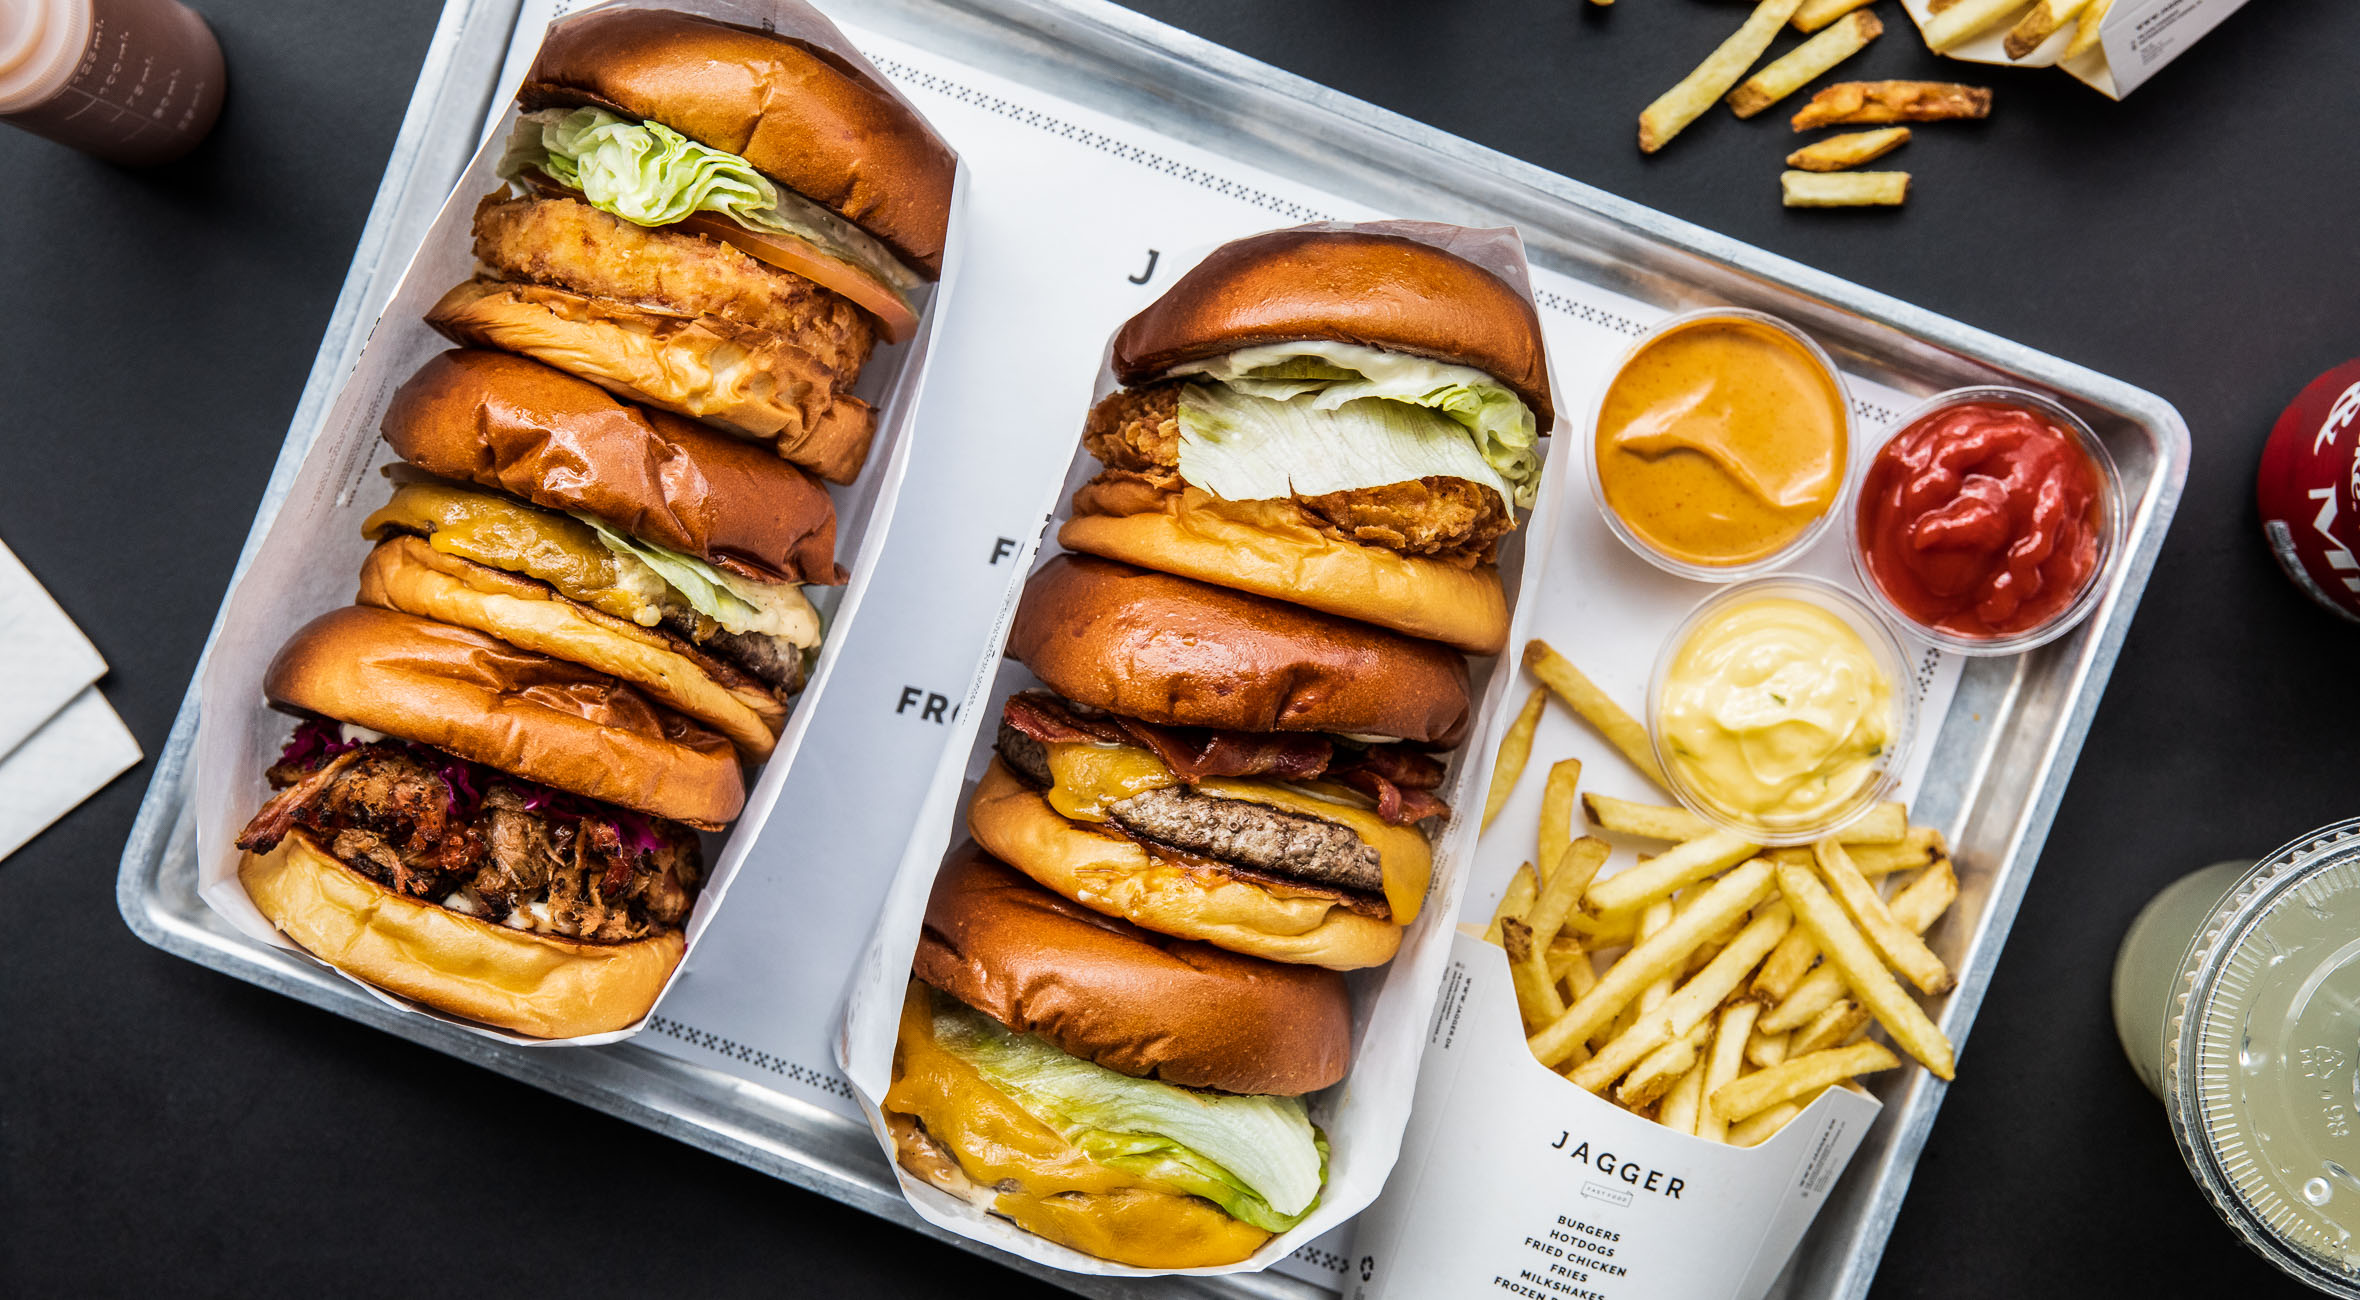 Valgfri burger combo hos Jagger – På seks år har de udviklet sig til en burgerkæde med 14 restauranter spredt ud over København og omegn